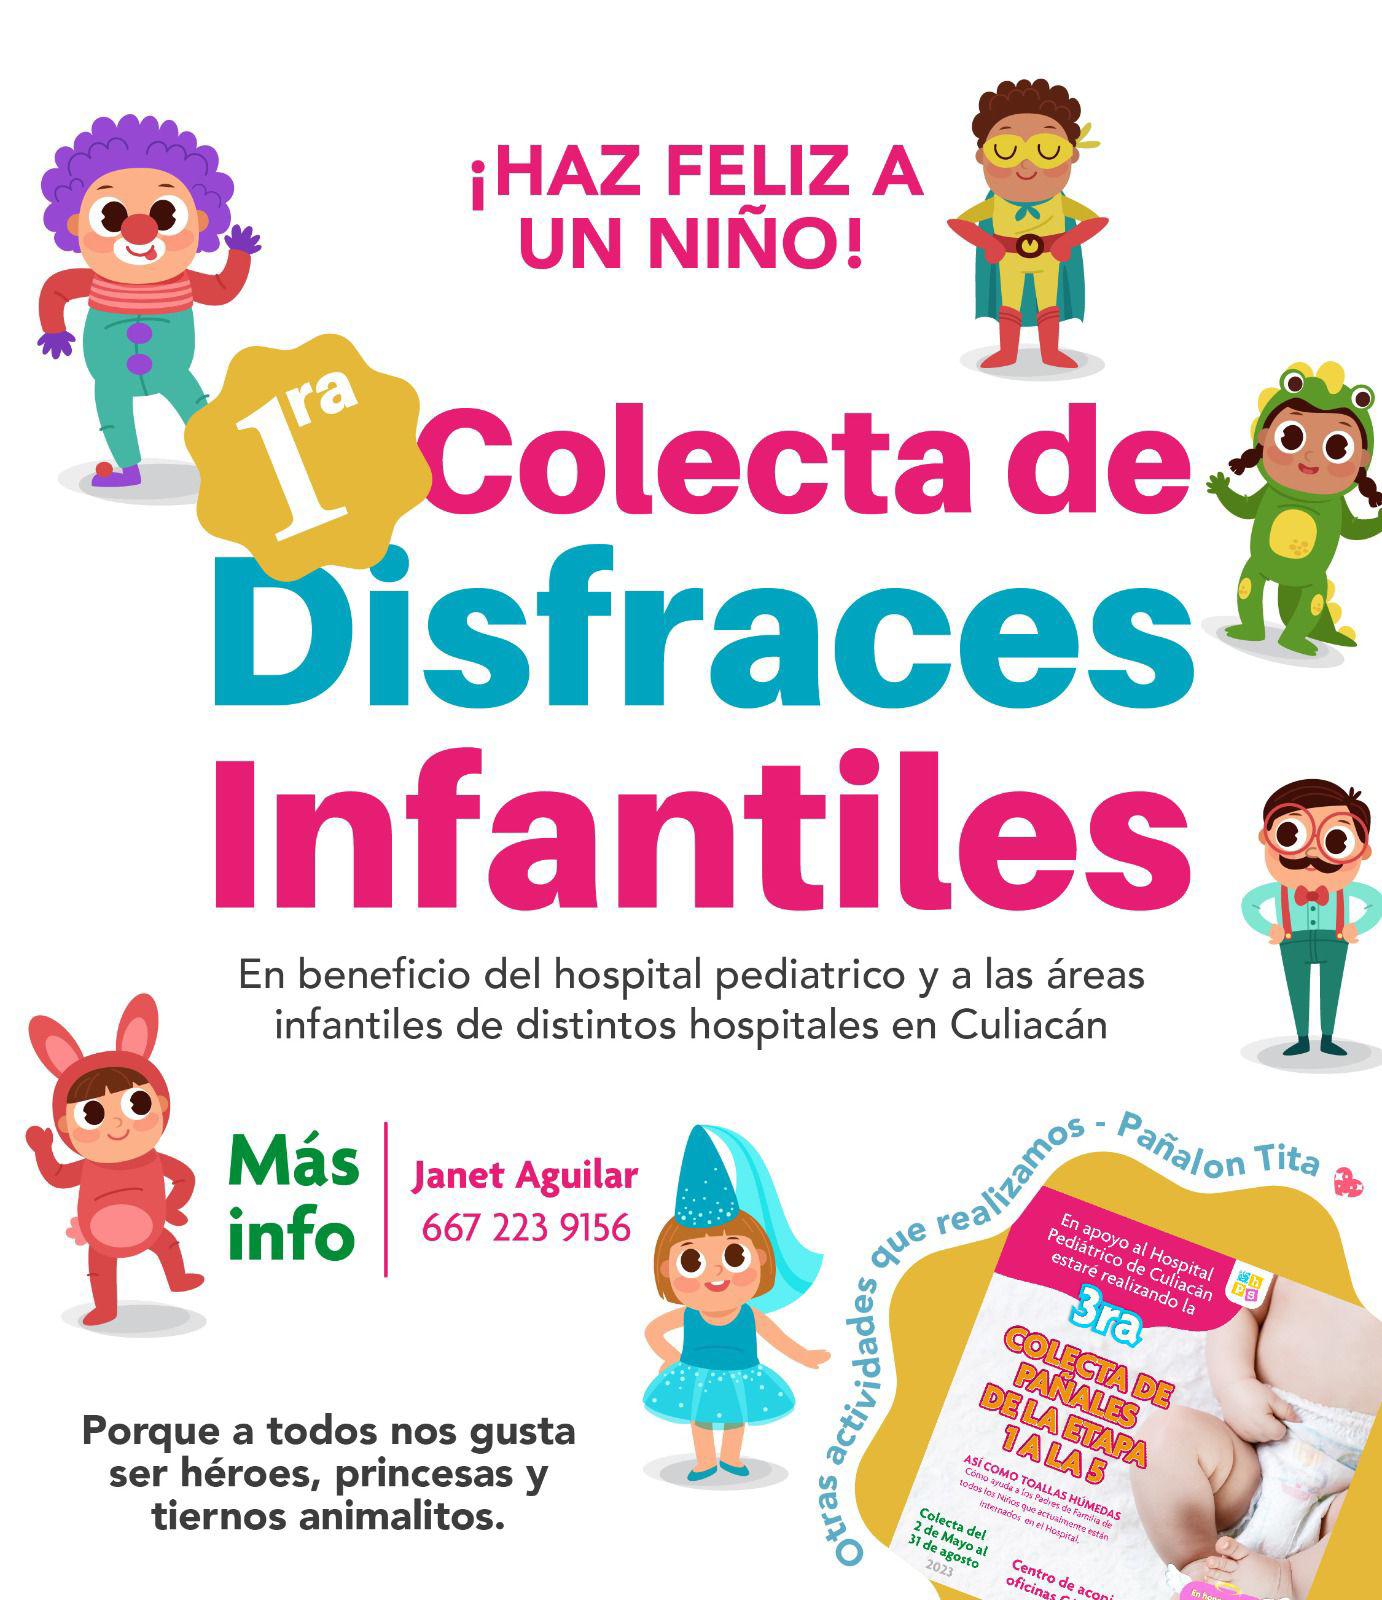 $!Llaman a donar disfraces infantiles al Hospital Pediátrico de Culiacán, previo al festejo del Día del Niño